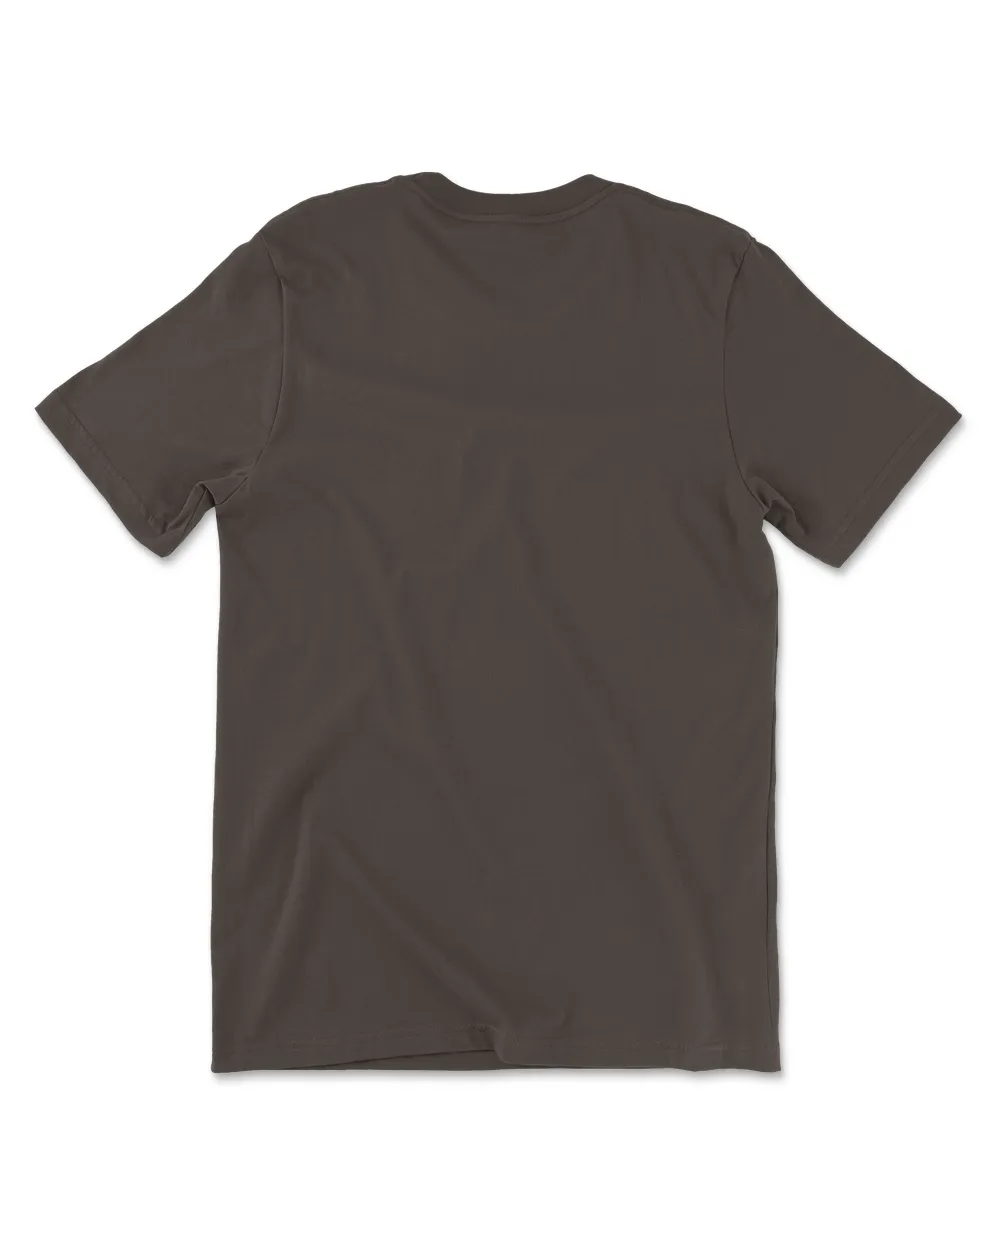 Marceline T-shirt classique